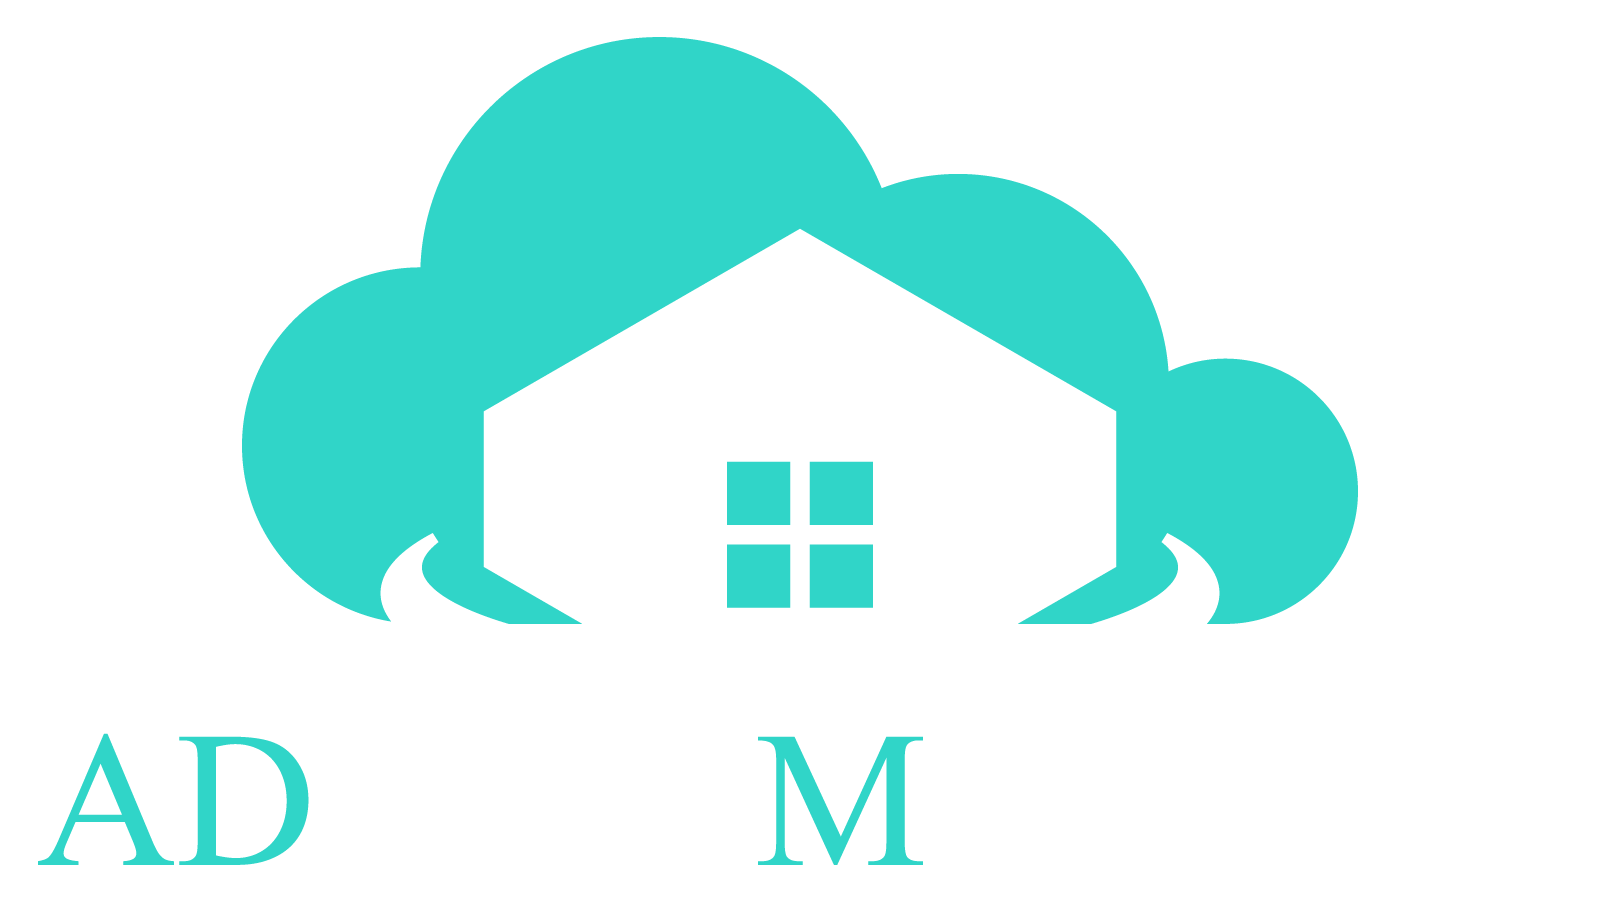 ADream Mortgage